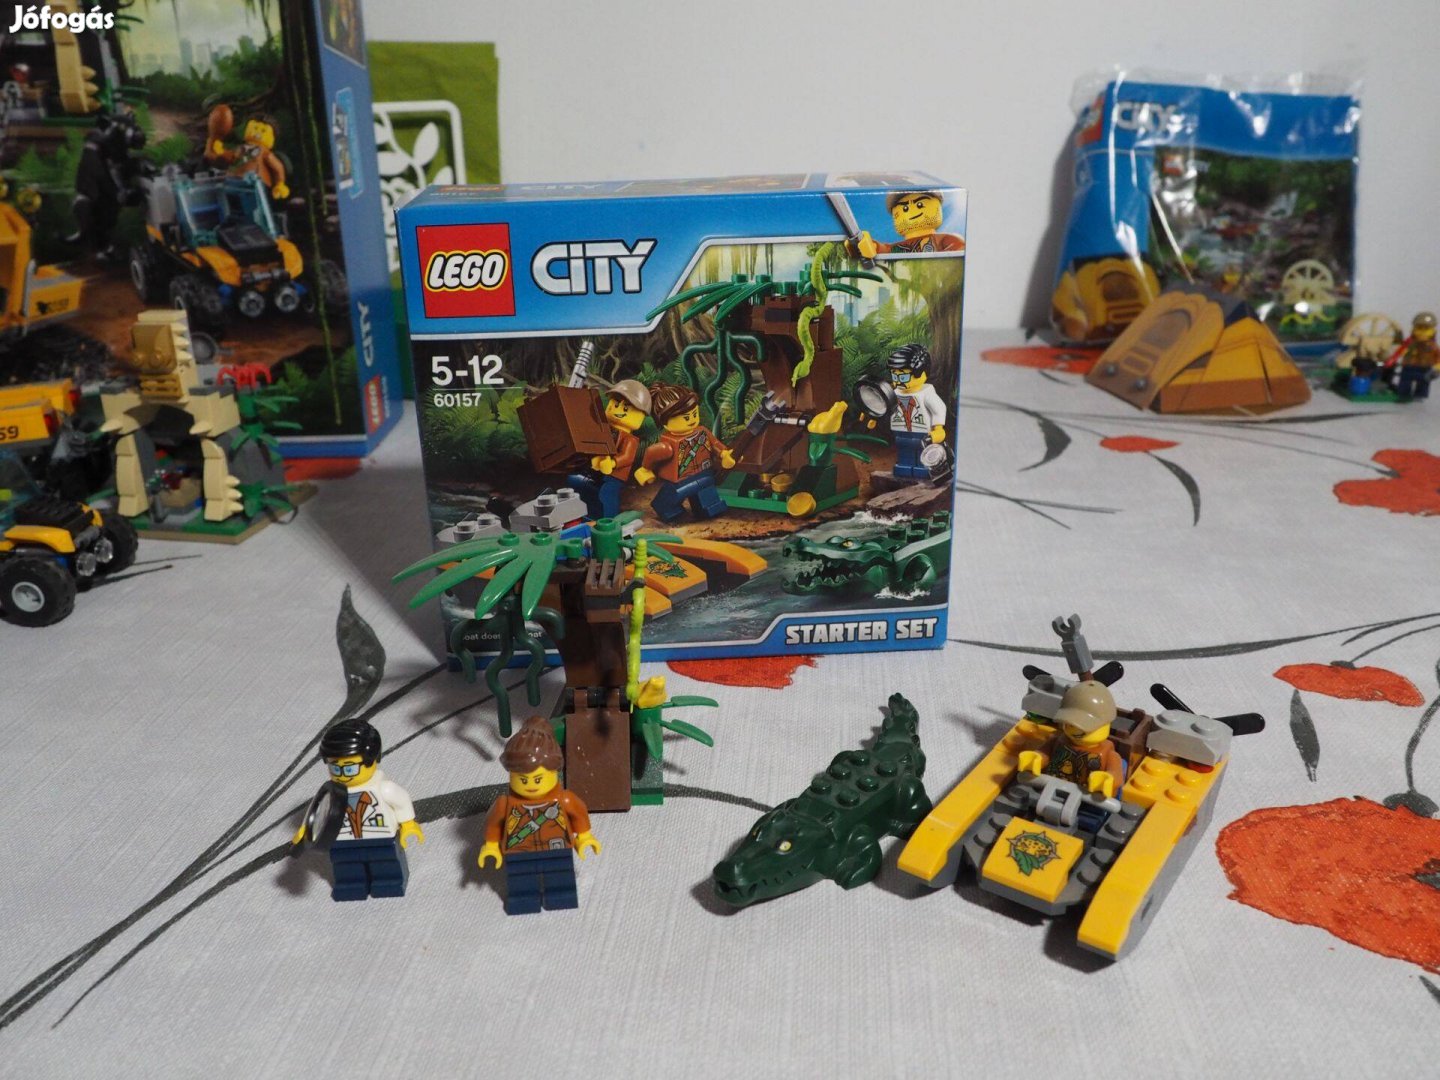 60157 LEGO City - Dzsungel kezdőkészlet